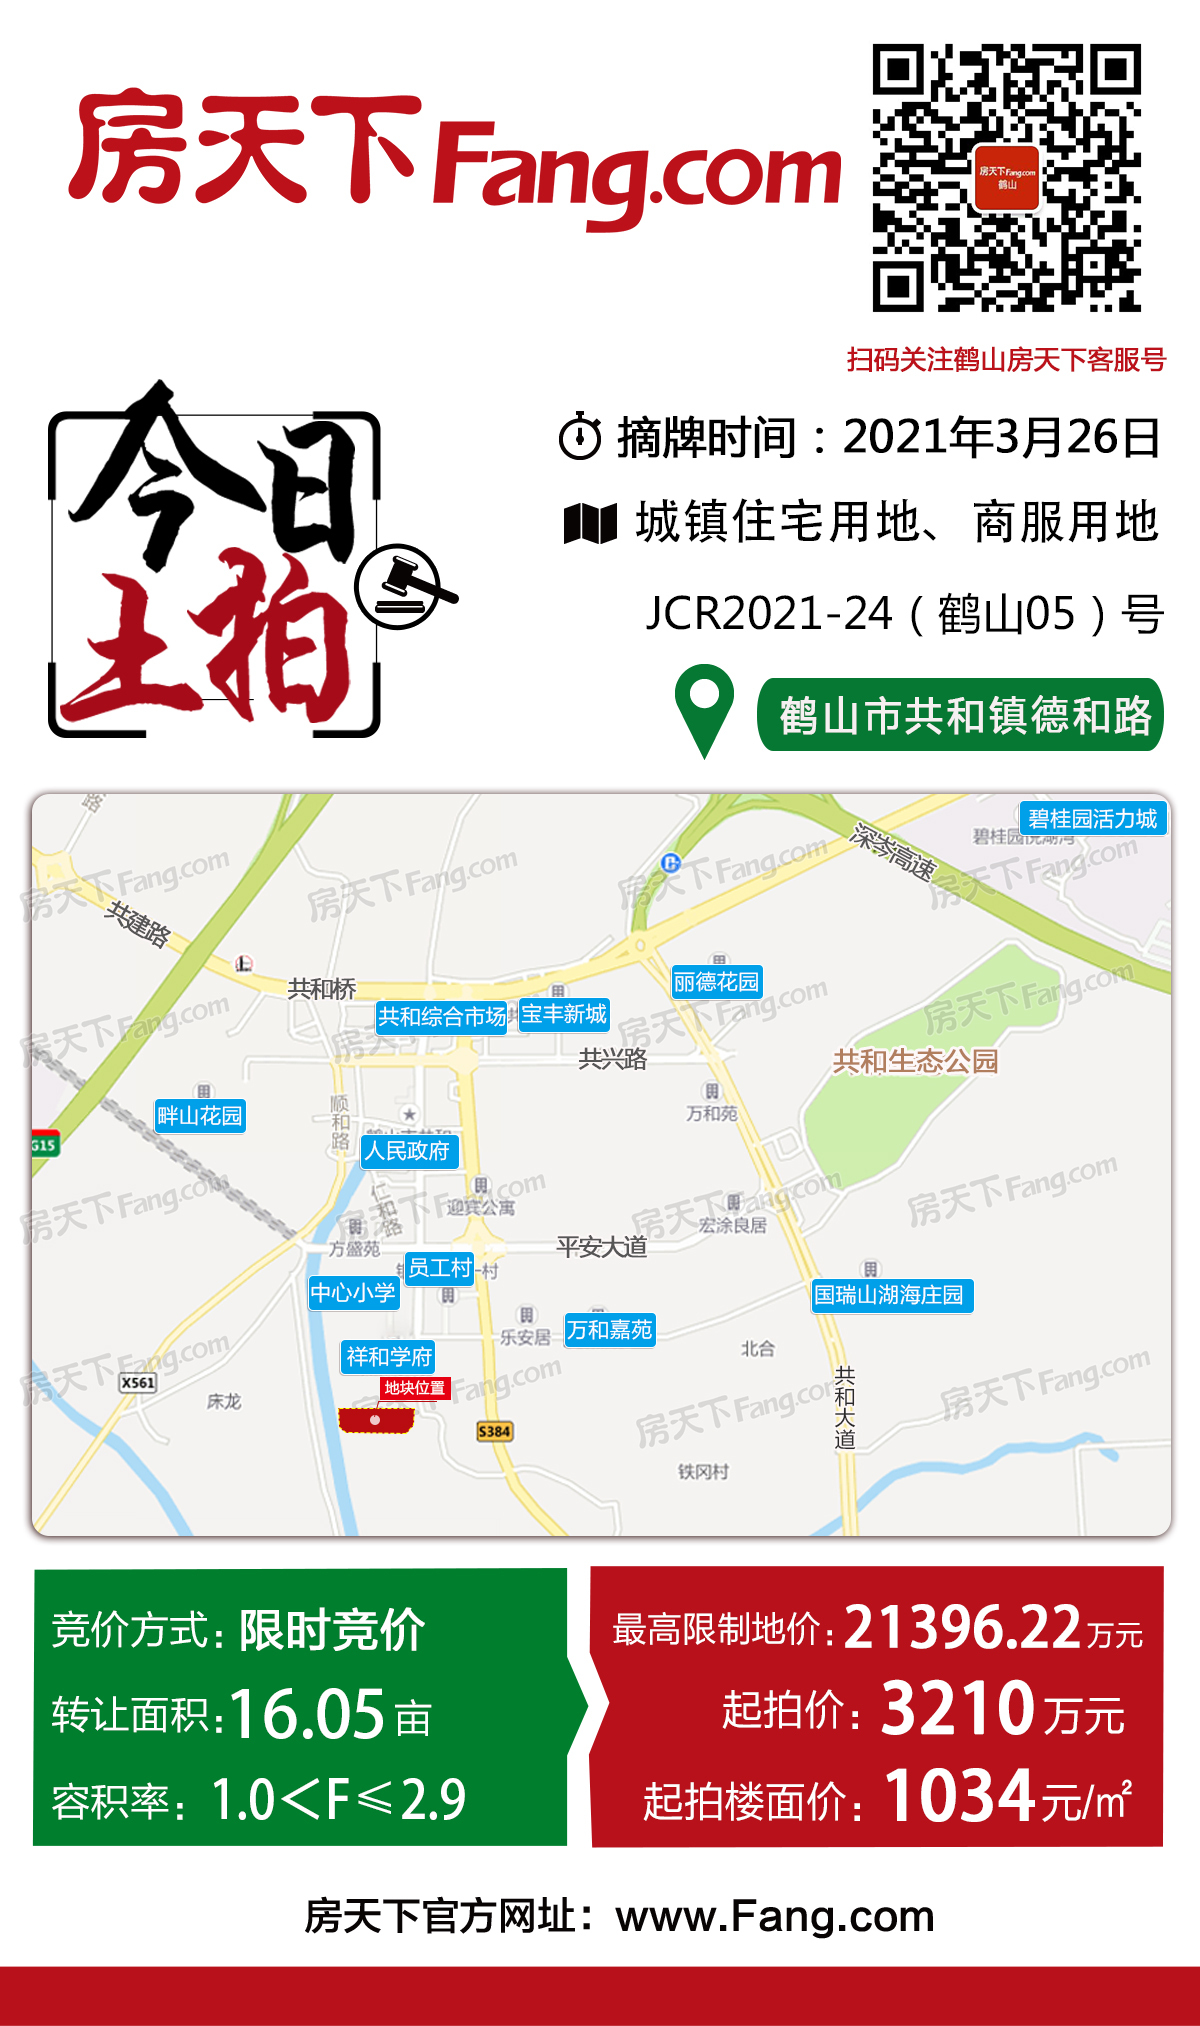 【土拍】鹤山挂牌16.05亩商住地 限价21396万元